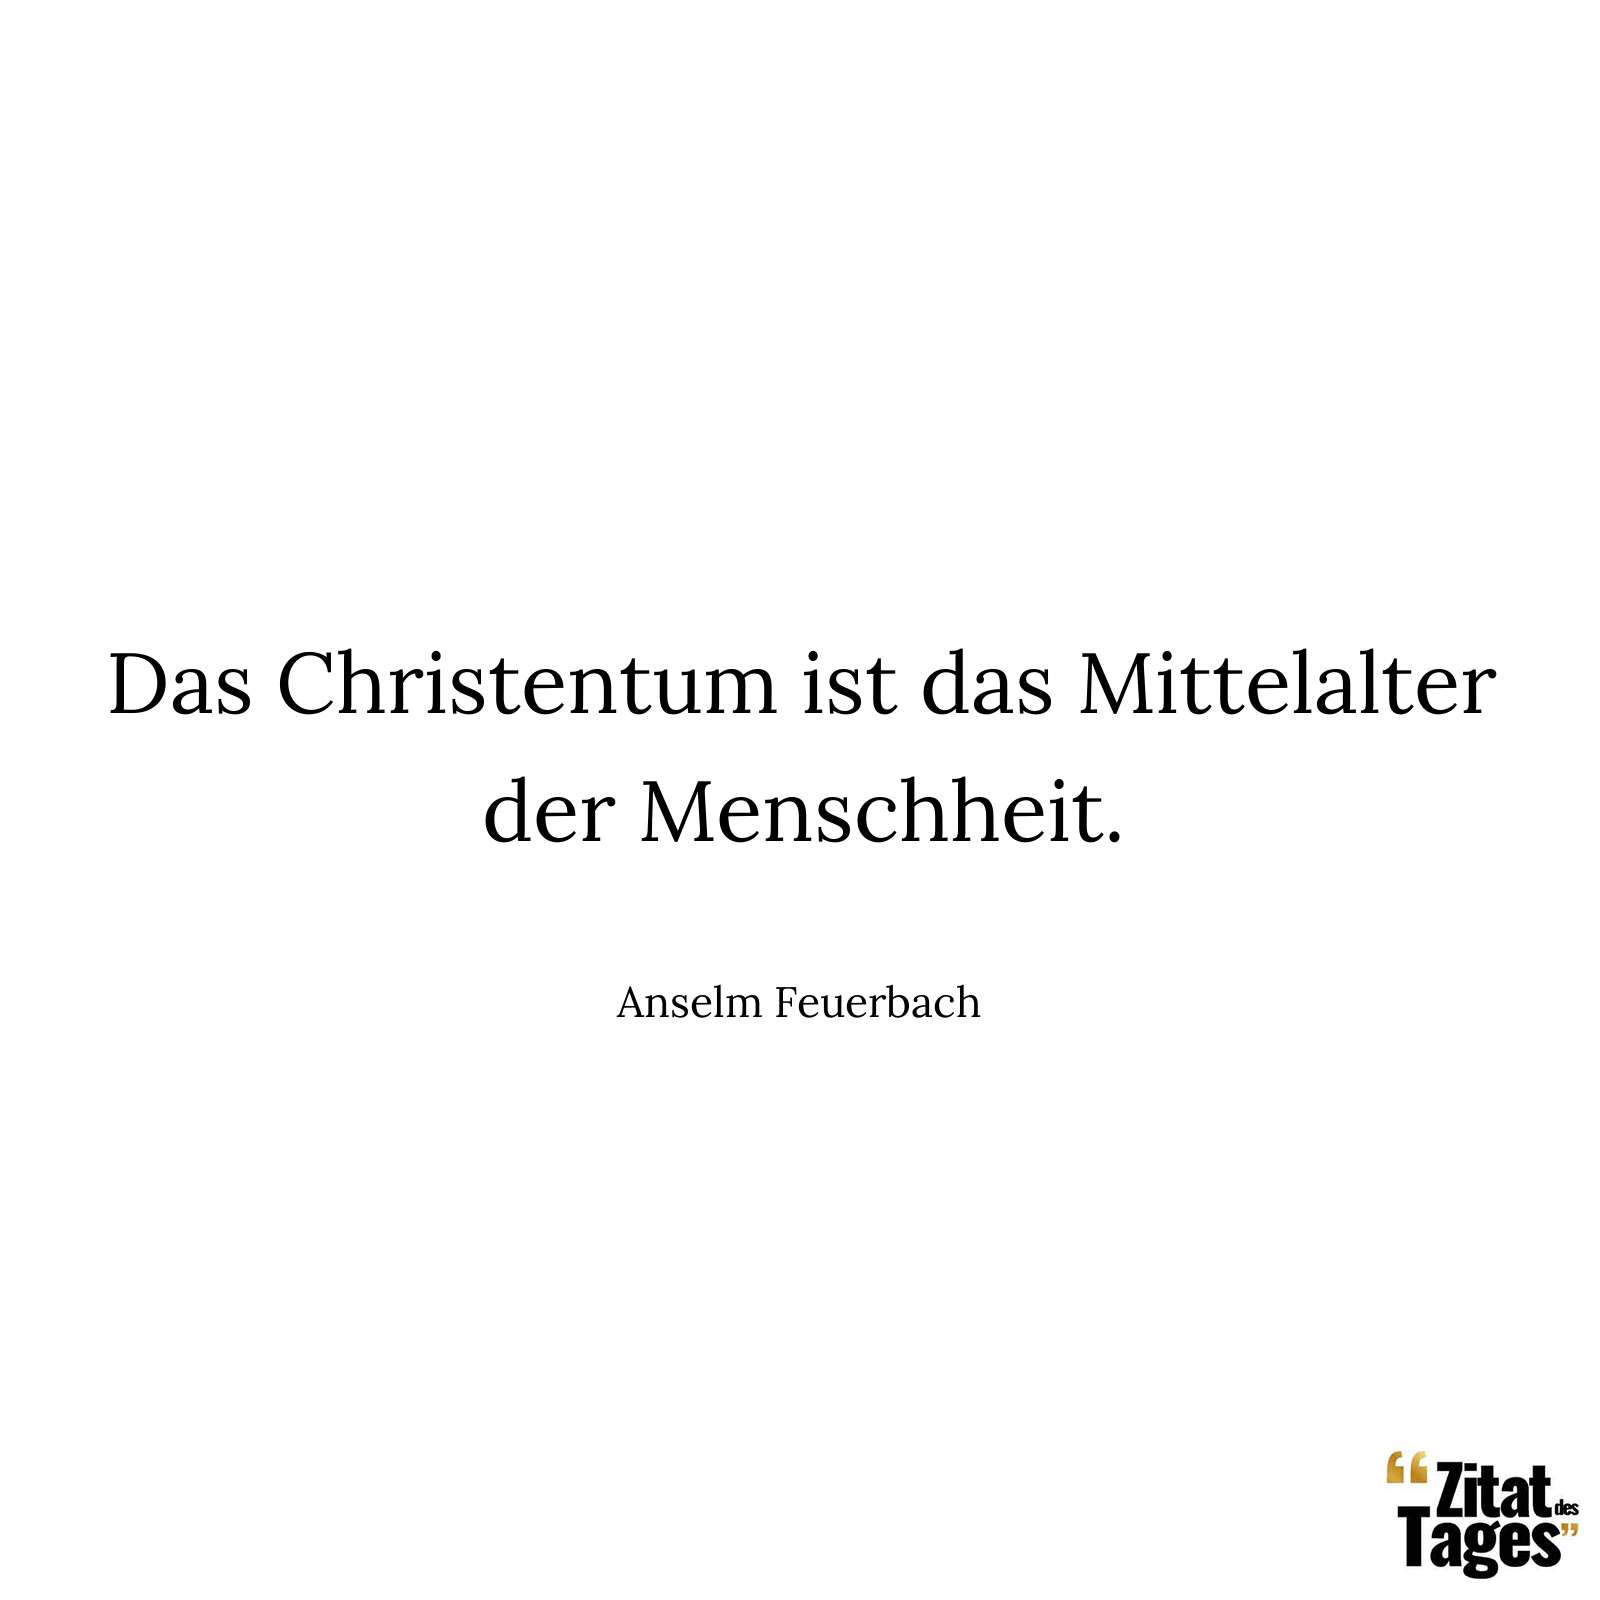 Das Christentum ist das Mittelalter der Menschheit. - Anselm Feuerbach